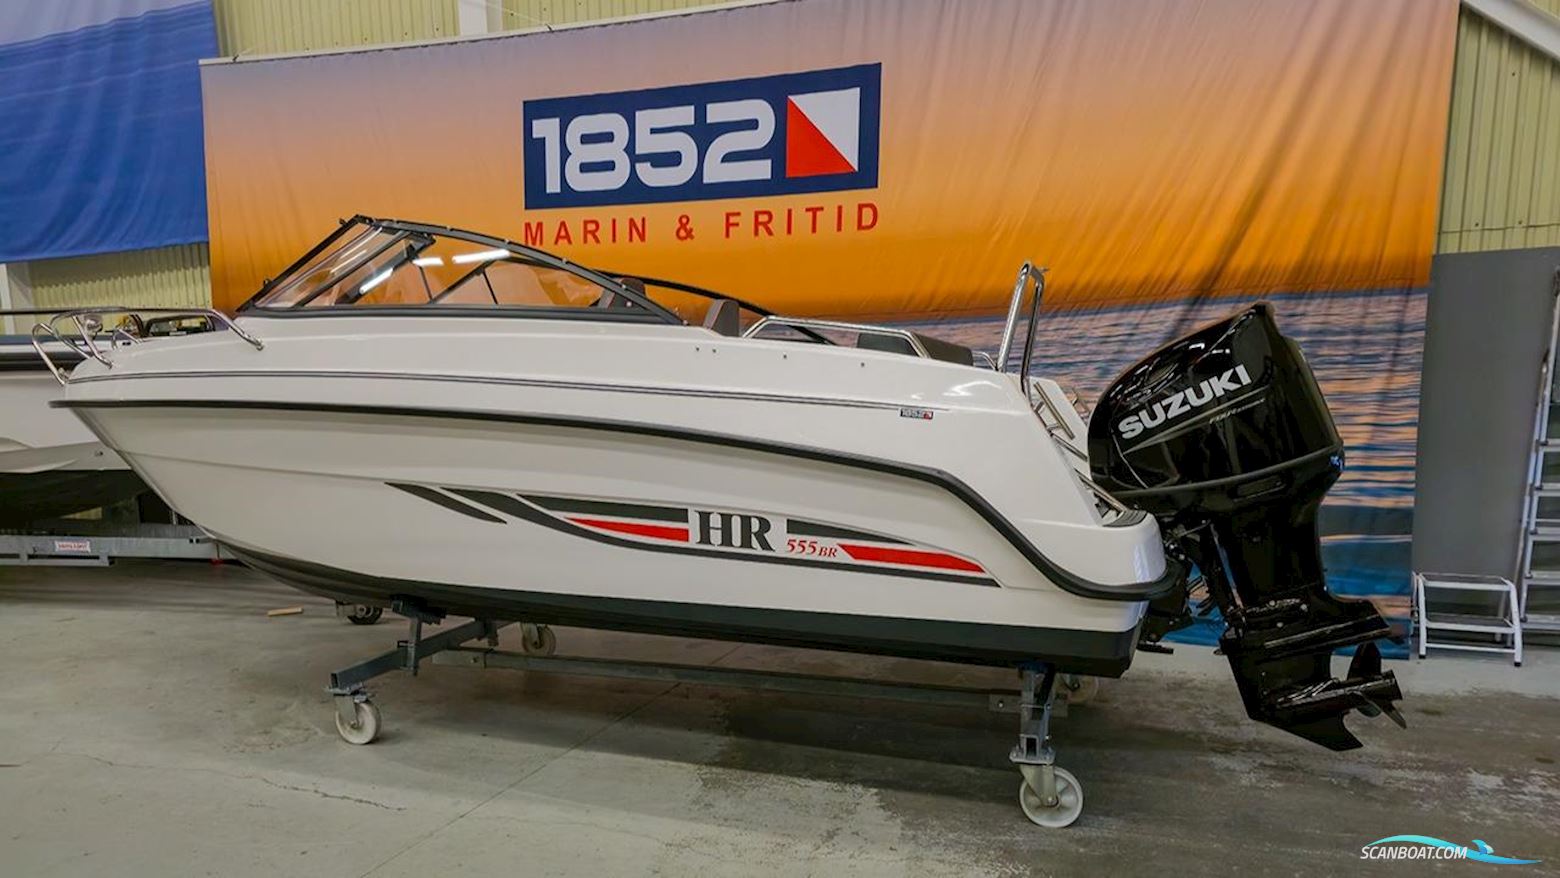 Hr 555 BR Motor boat 2023, with Suzuki engine, Sweden